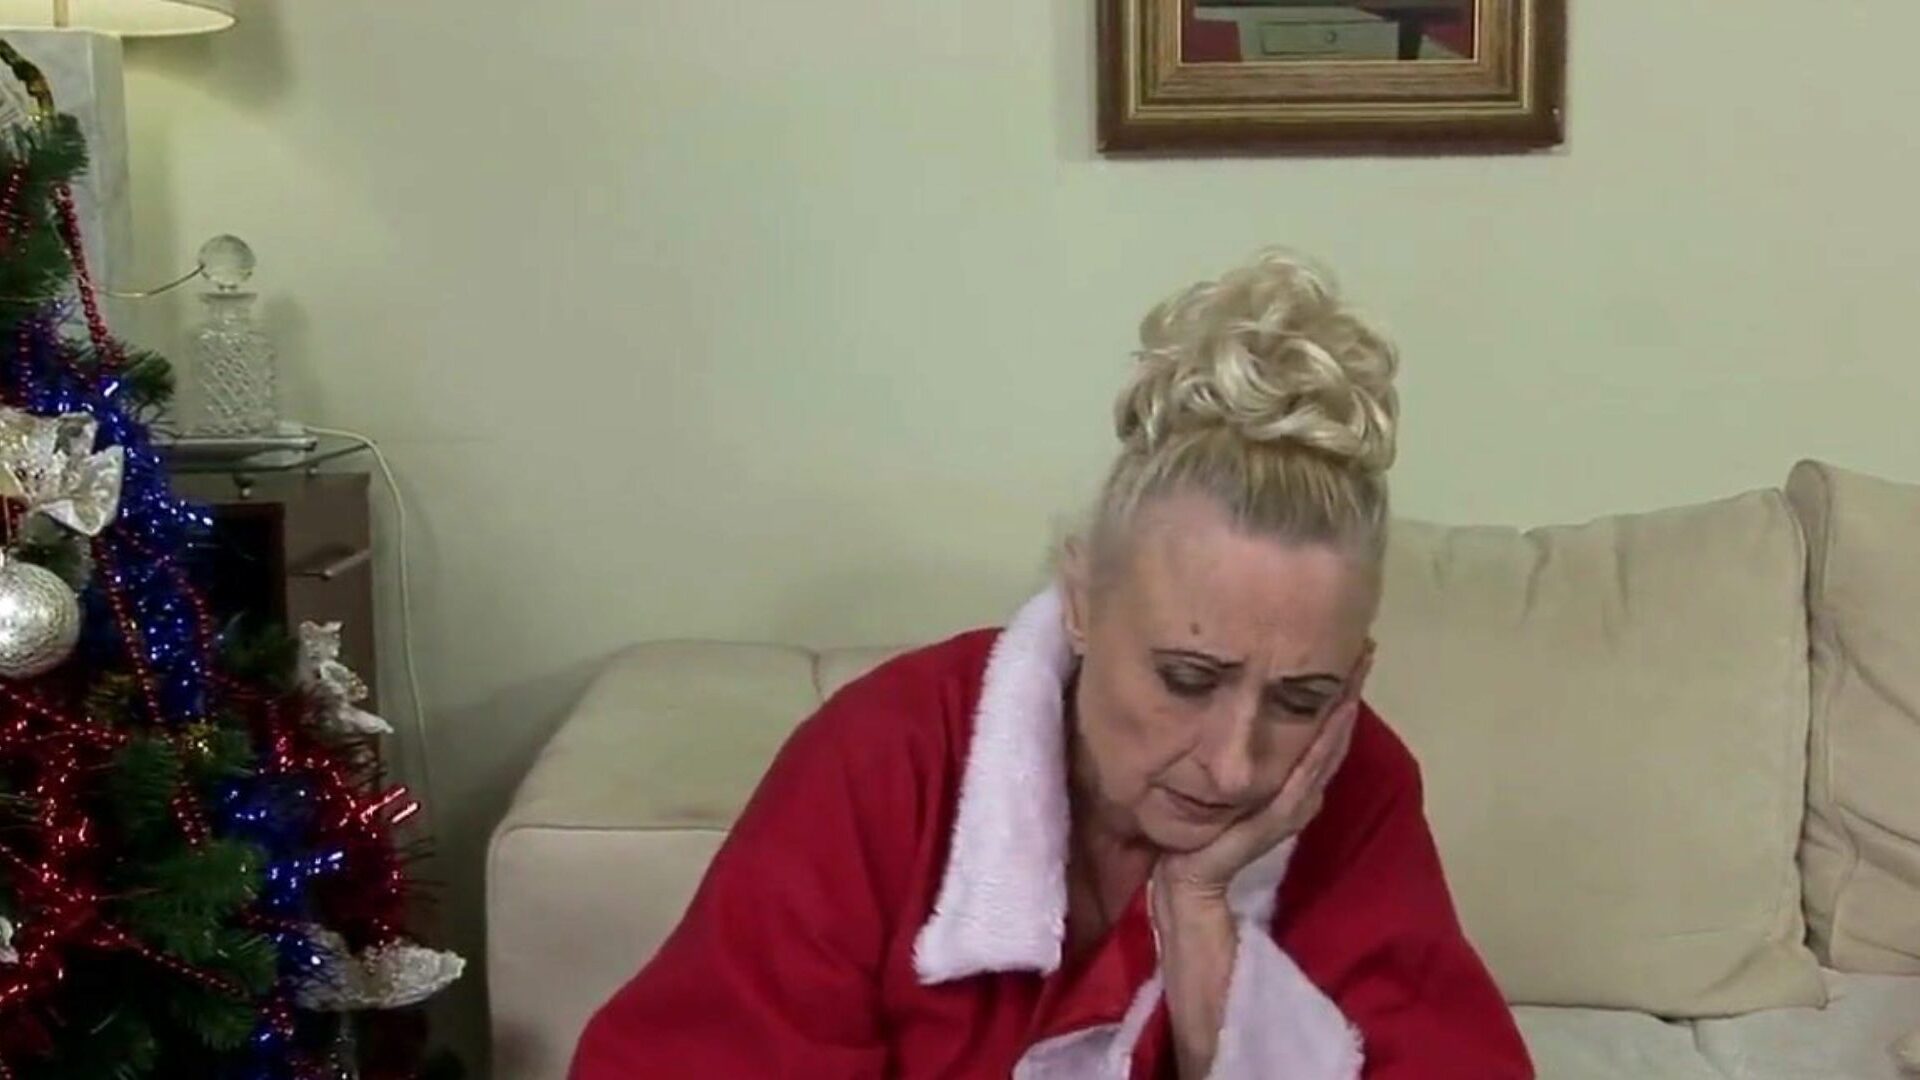 סבתא לא רוצה לבלות את חג המולד לבד: פורנו בחינם E8 צפה בסבתא לא רוצה לבלות את חג המולד לבדו בפרק על xhamster - הארכיון האולטימטיבי של סבתא וסבתא בחינם עבור כל פרקים בחינם.